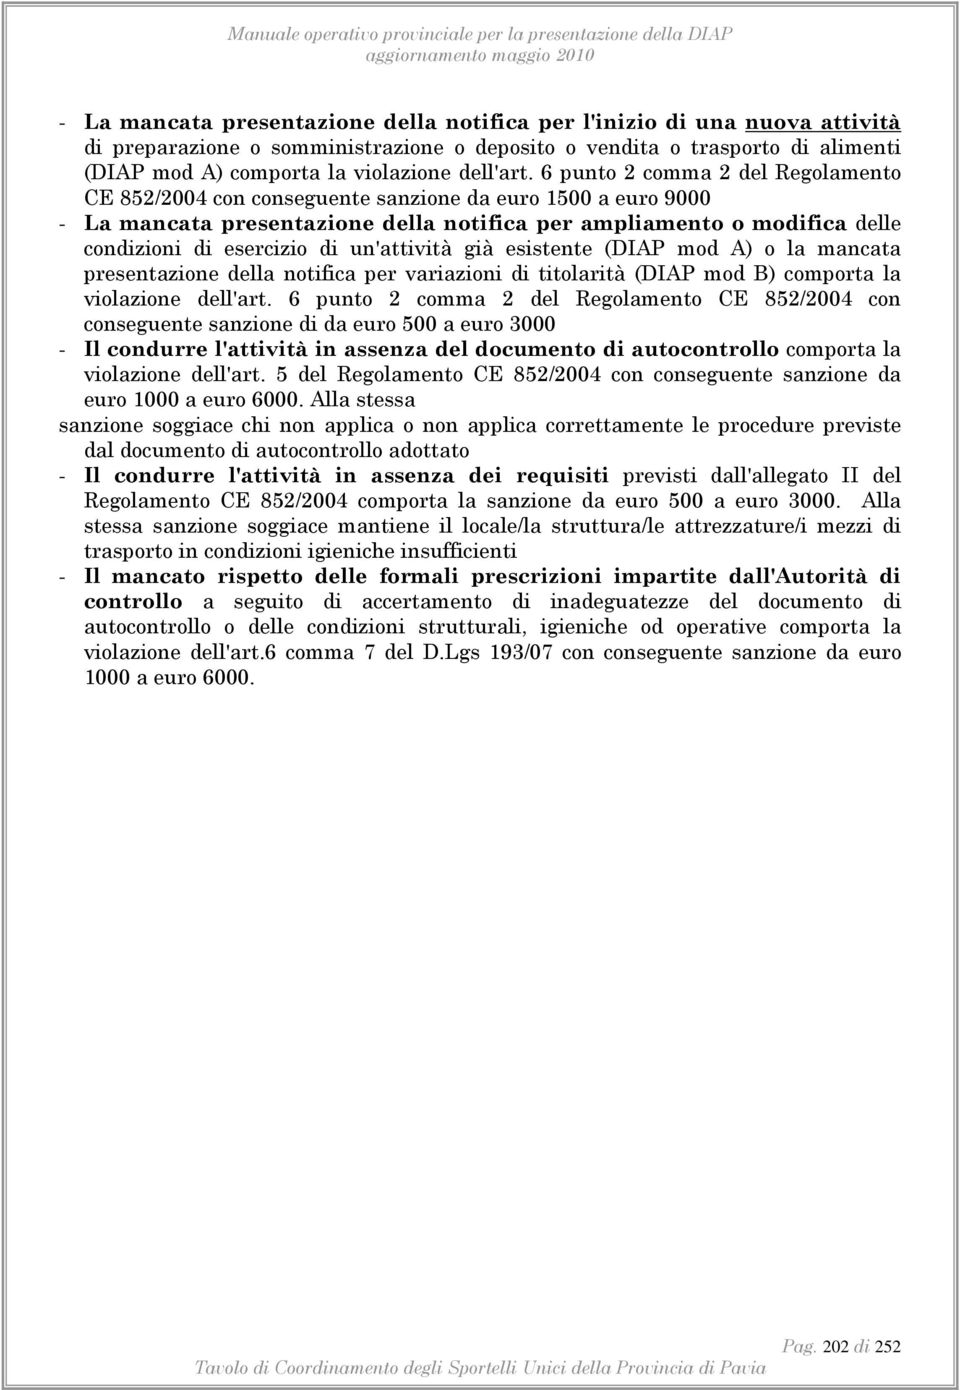 6 punto 2 comma 2 del Regolamento CE 852/2004 con conseguente sanzione da euro 1500 a euro 9000 - La mancata presentazione della notifica per ampliamento o modifica delle condizioni di esercizio di